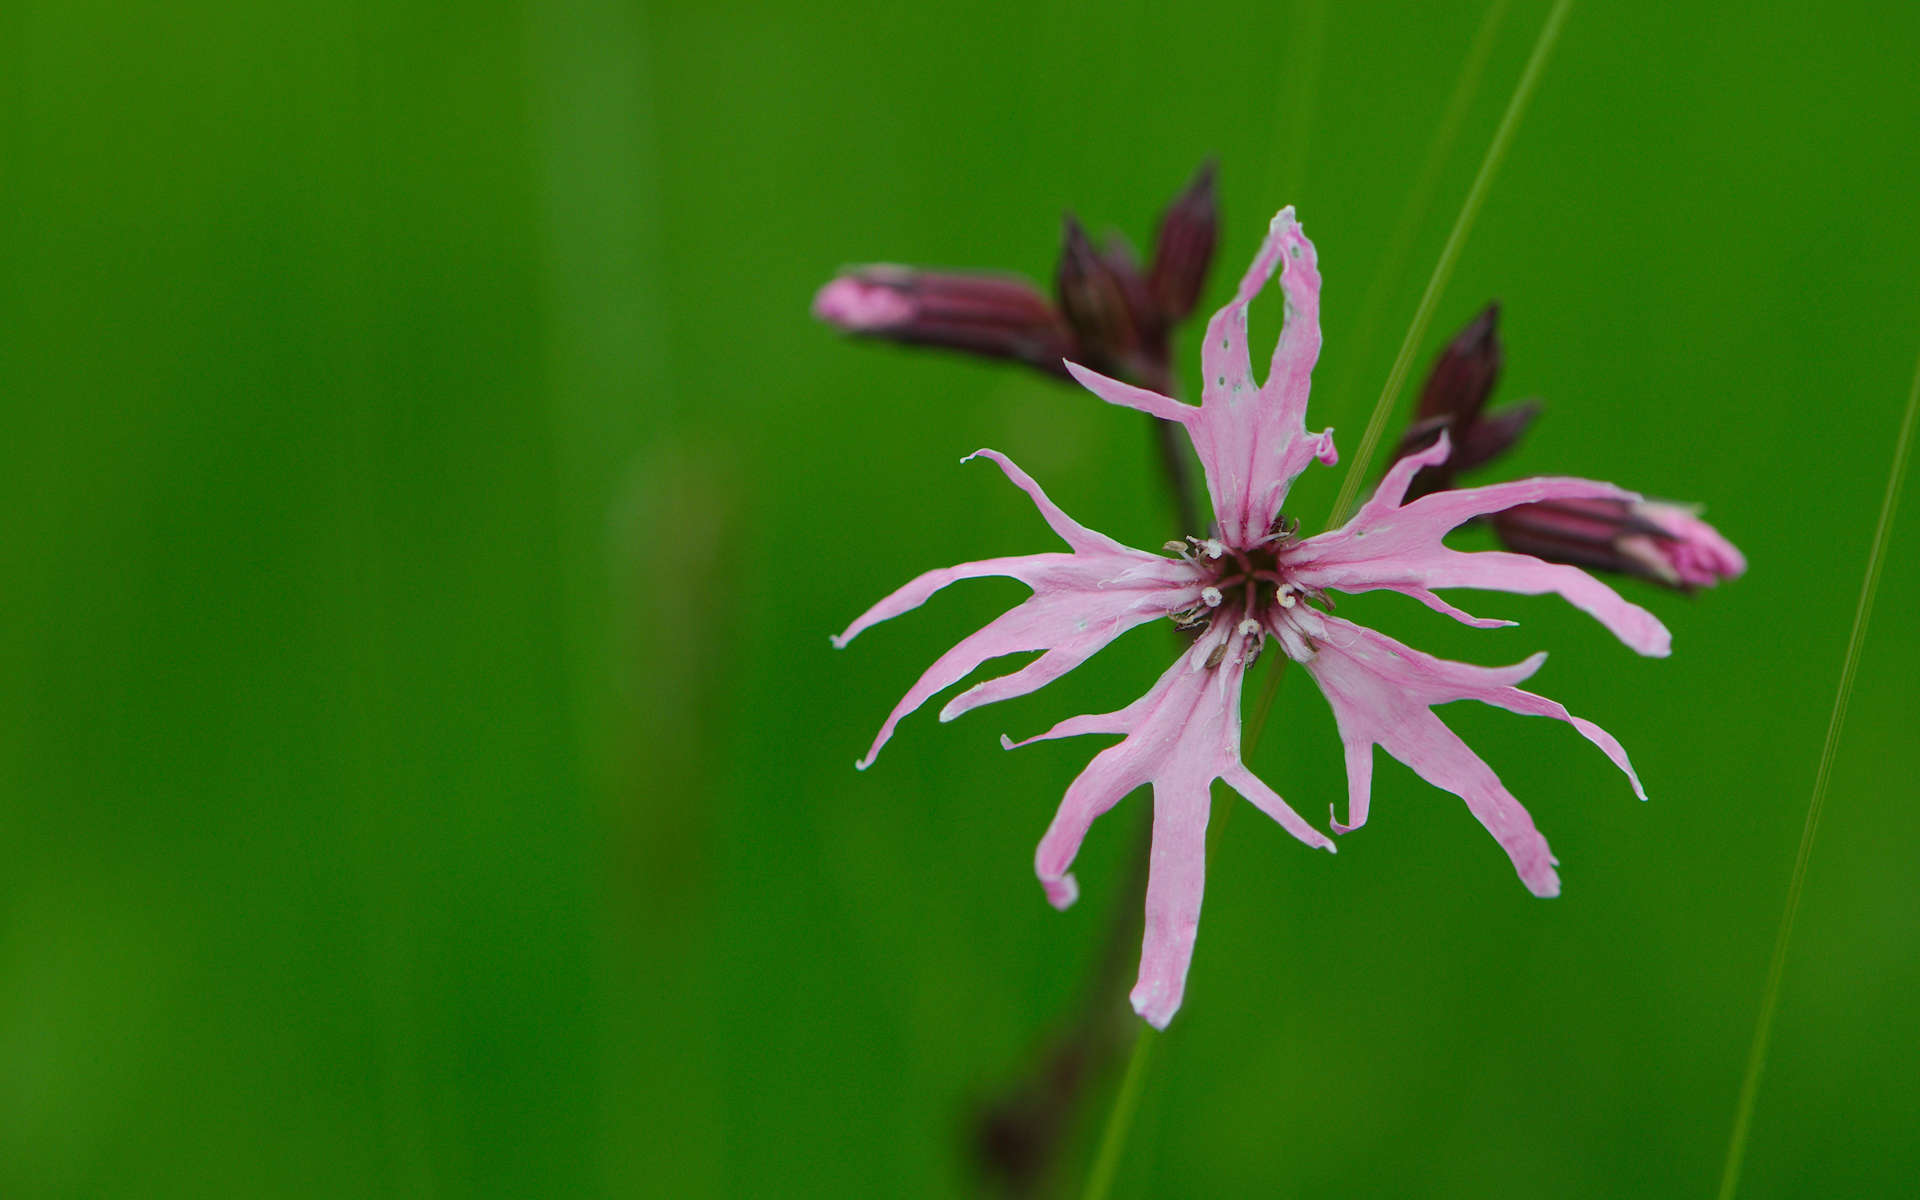 Silène fleur de coucou (Crédits: Magnus Hagdorn - Flickr)